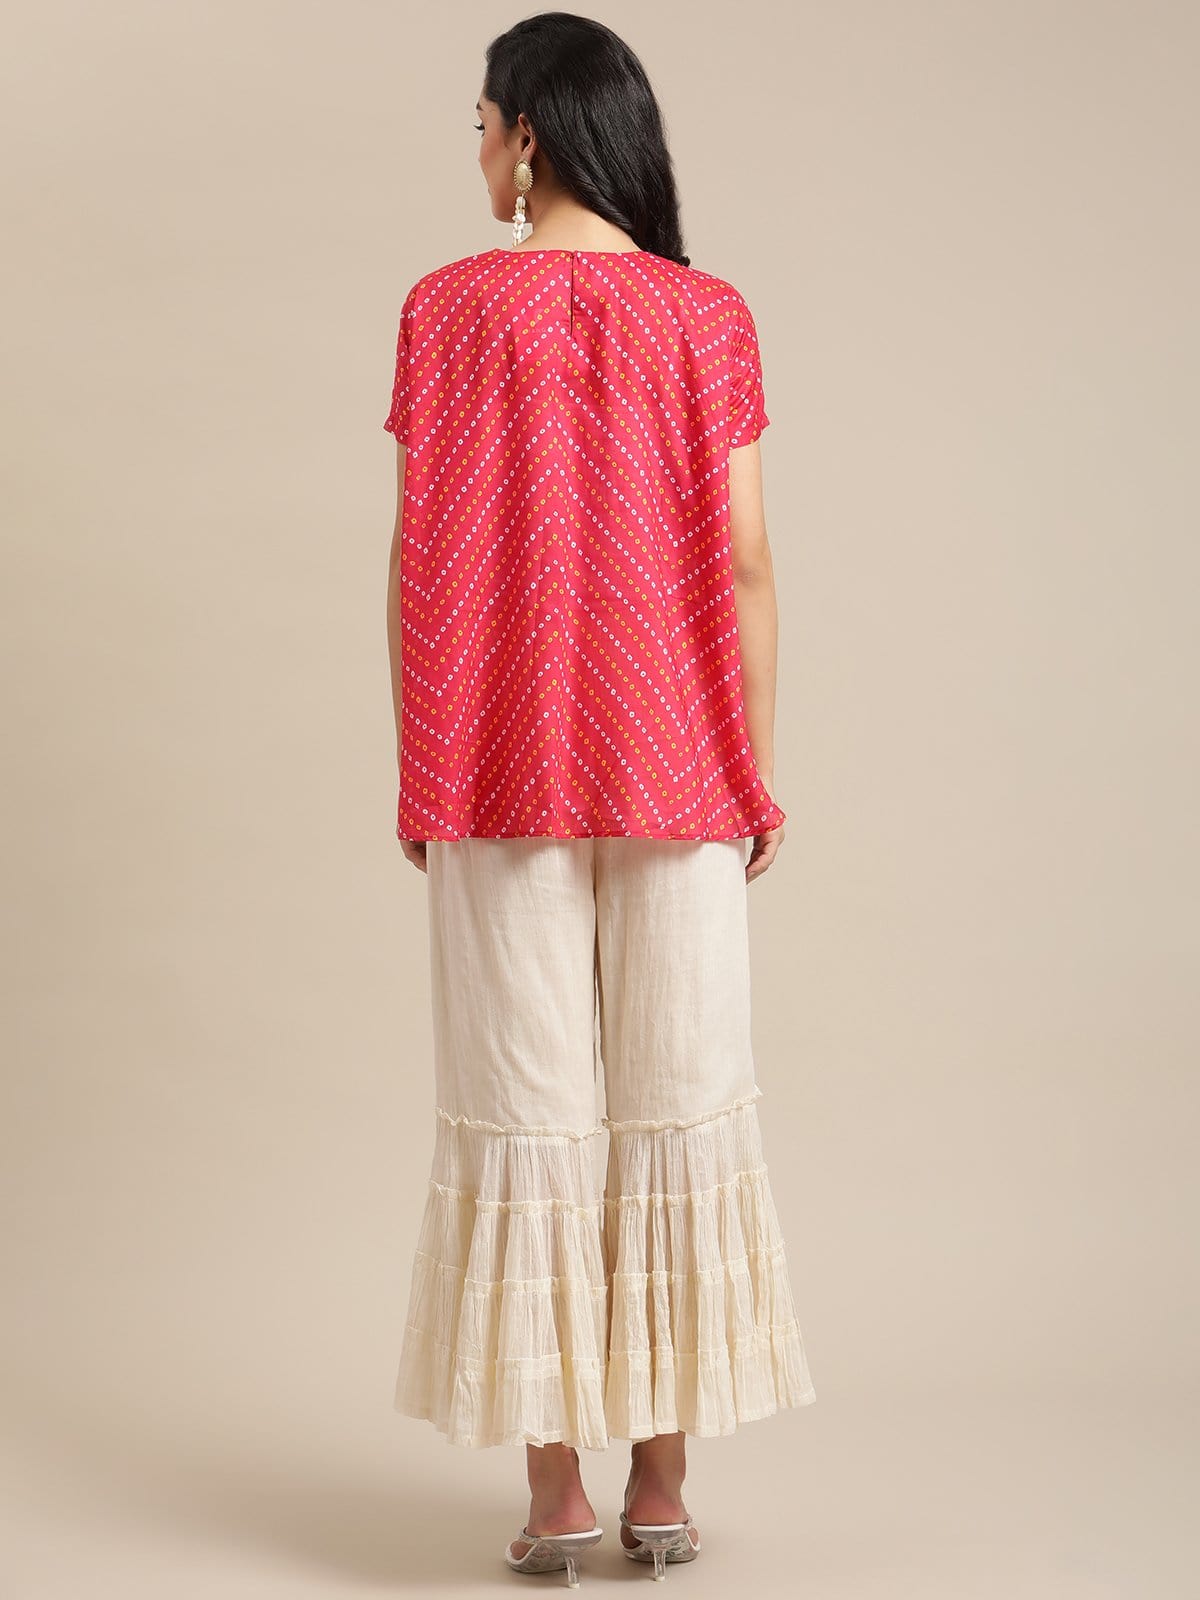 Women's Pink Bandhej Gota Patti Embellished Top With Off White Shrarara Set - Varanga